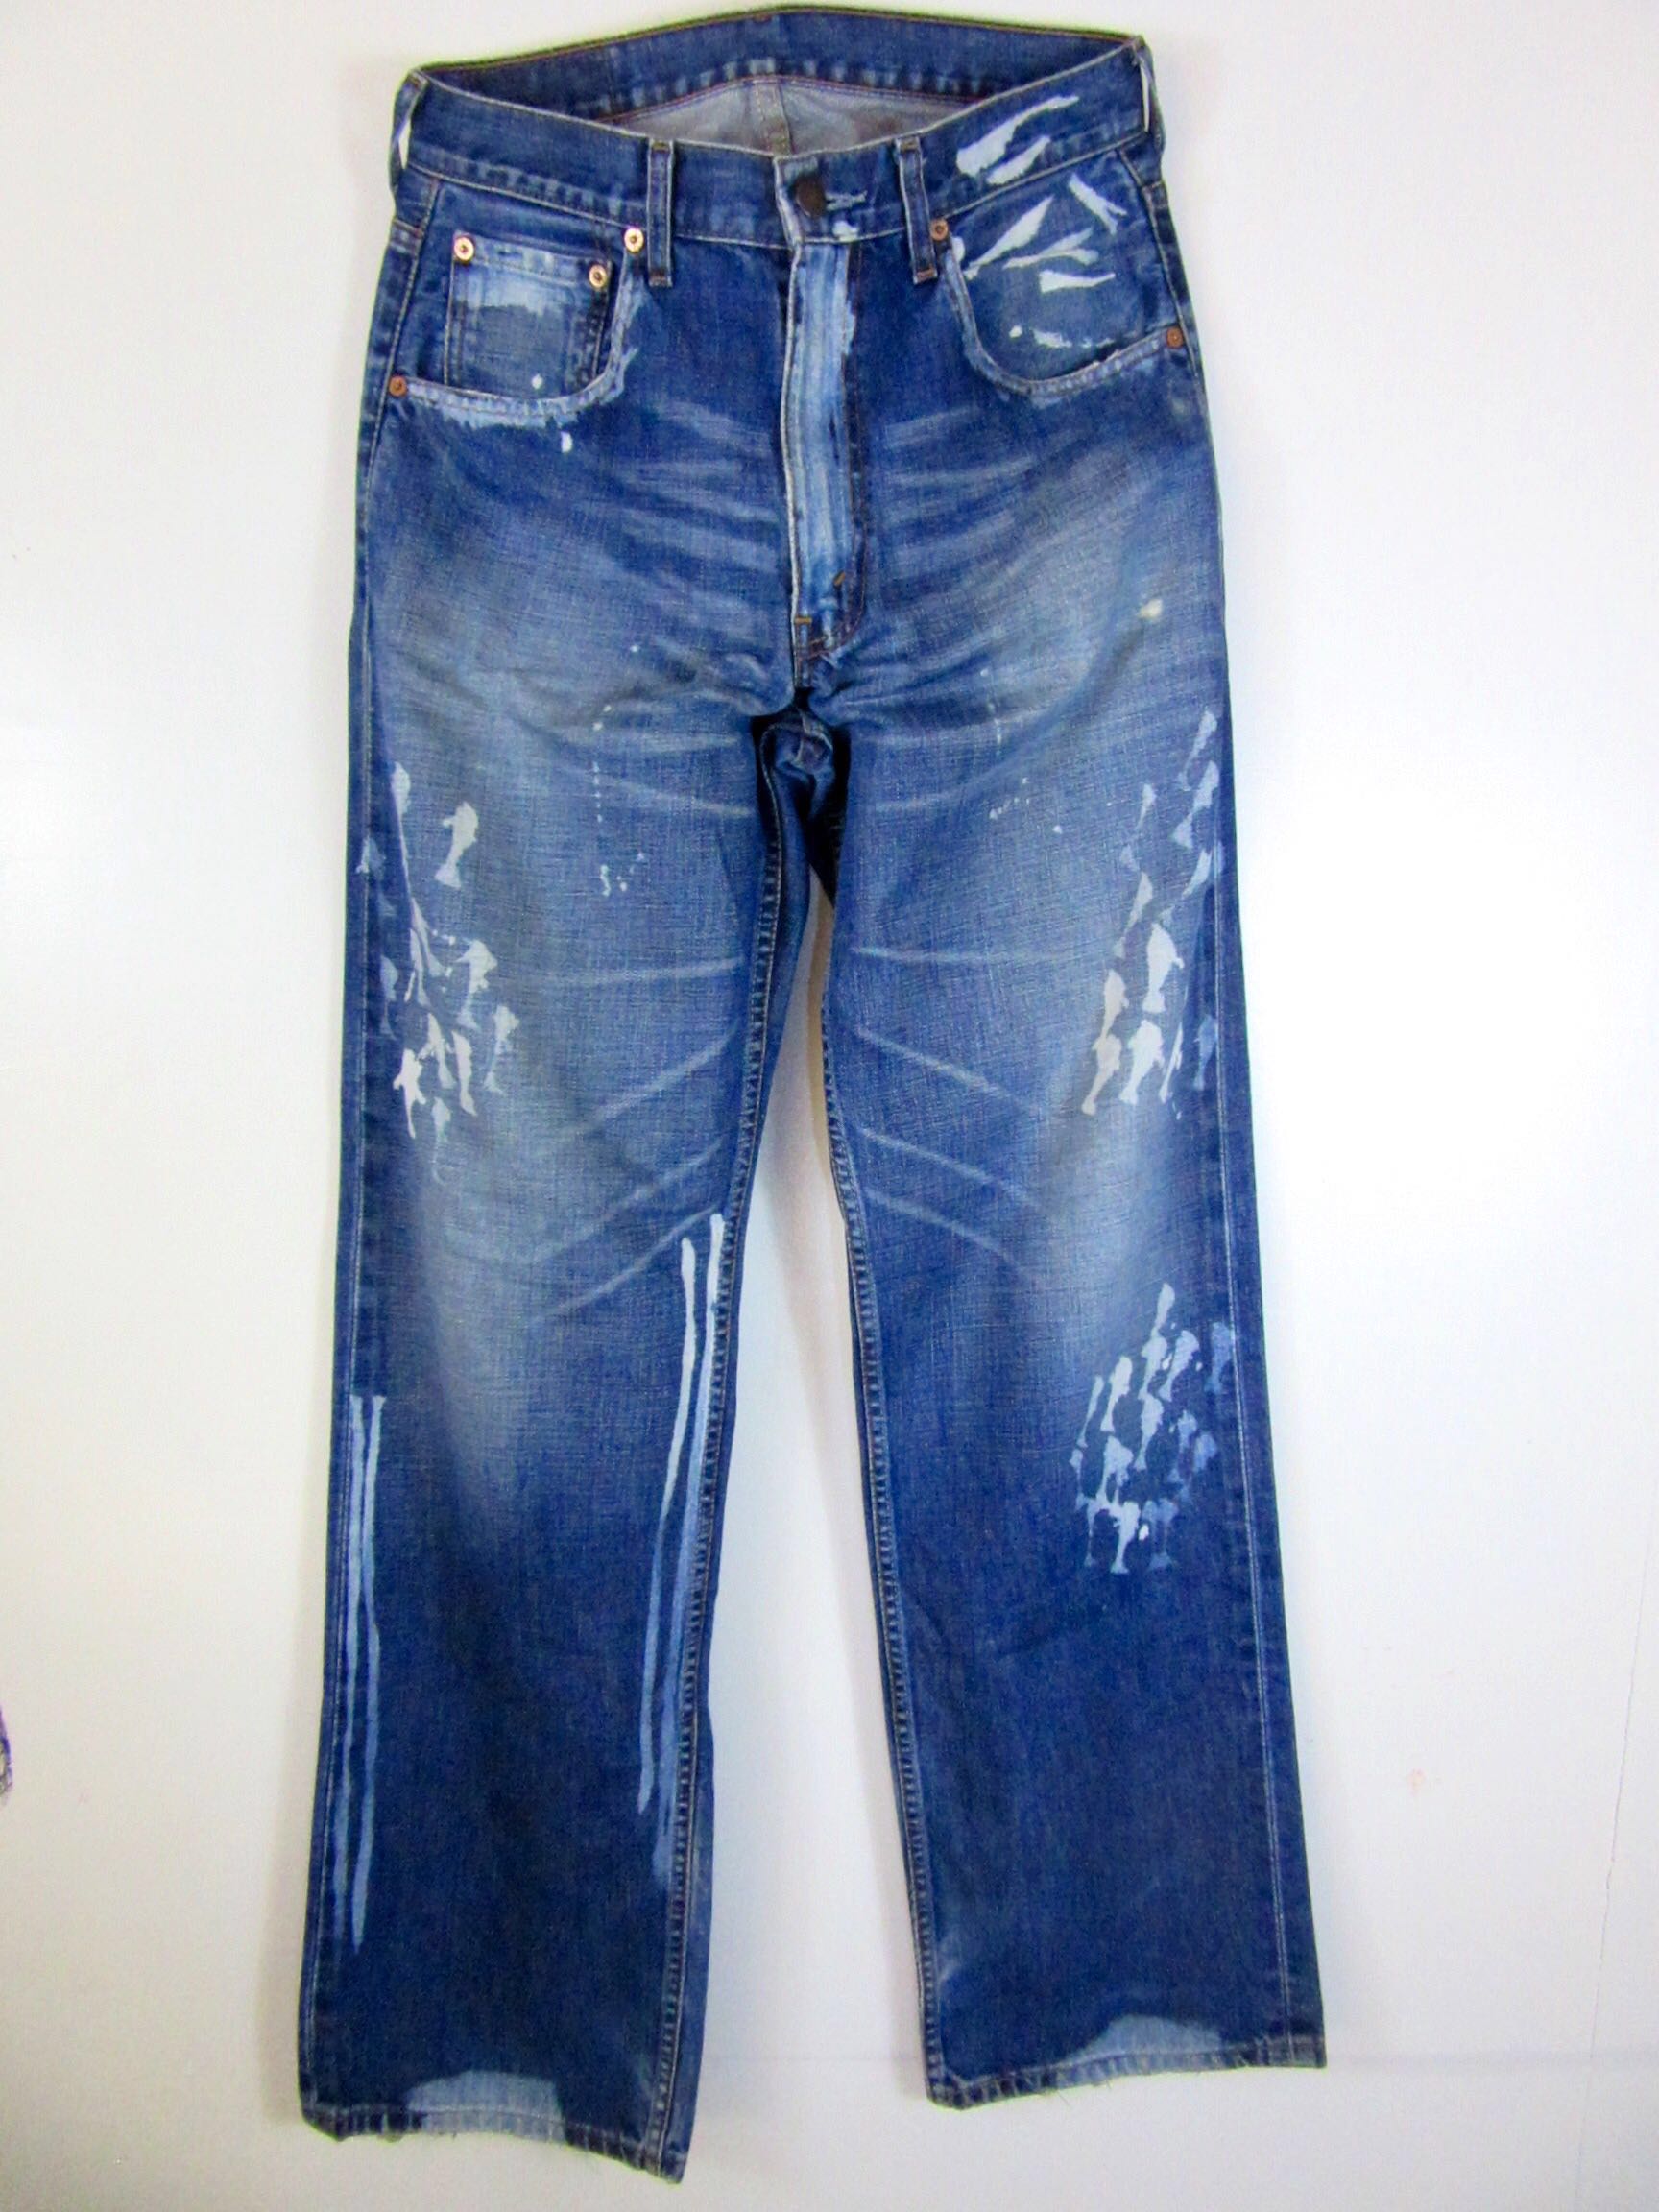 levis 515 jeans